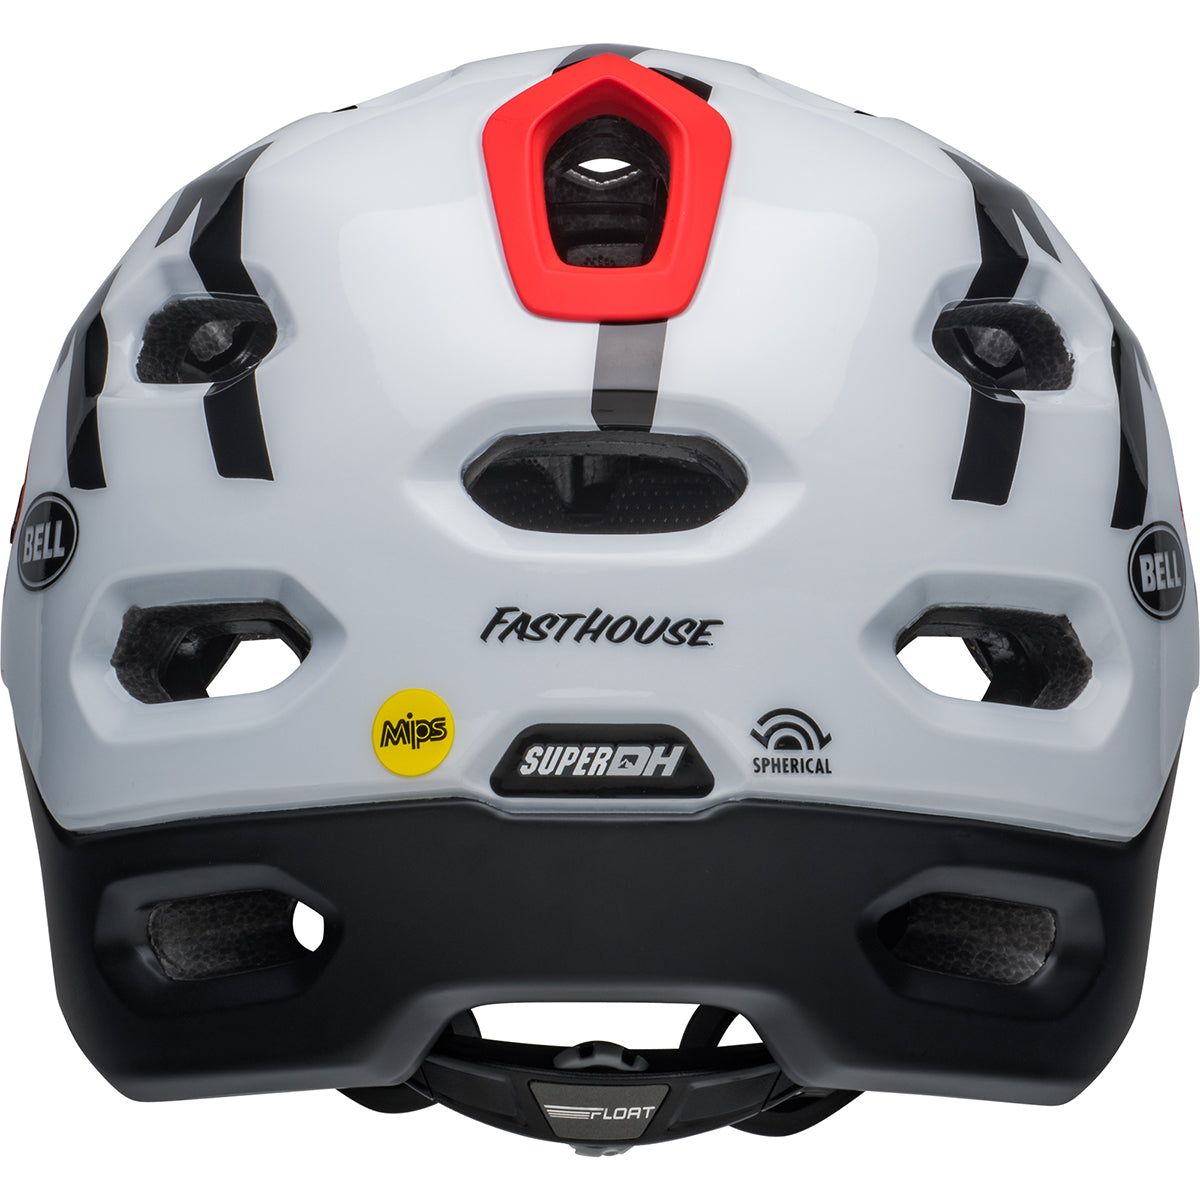 Bell Super DH Spherical MTB Helmet - Black/White